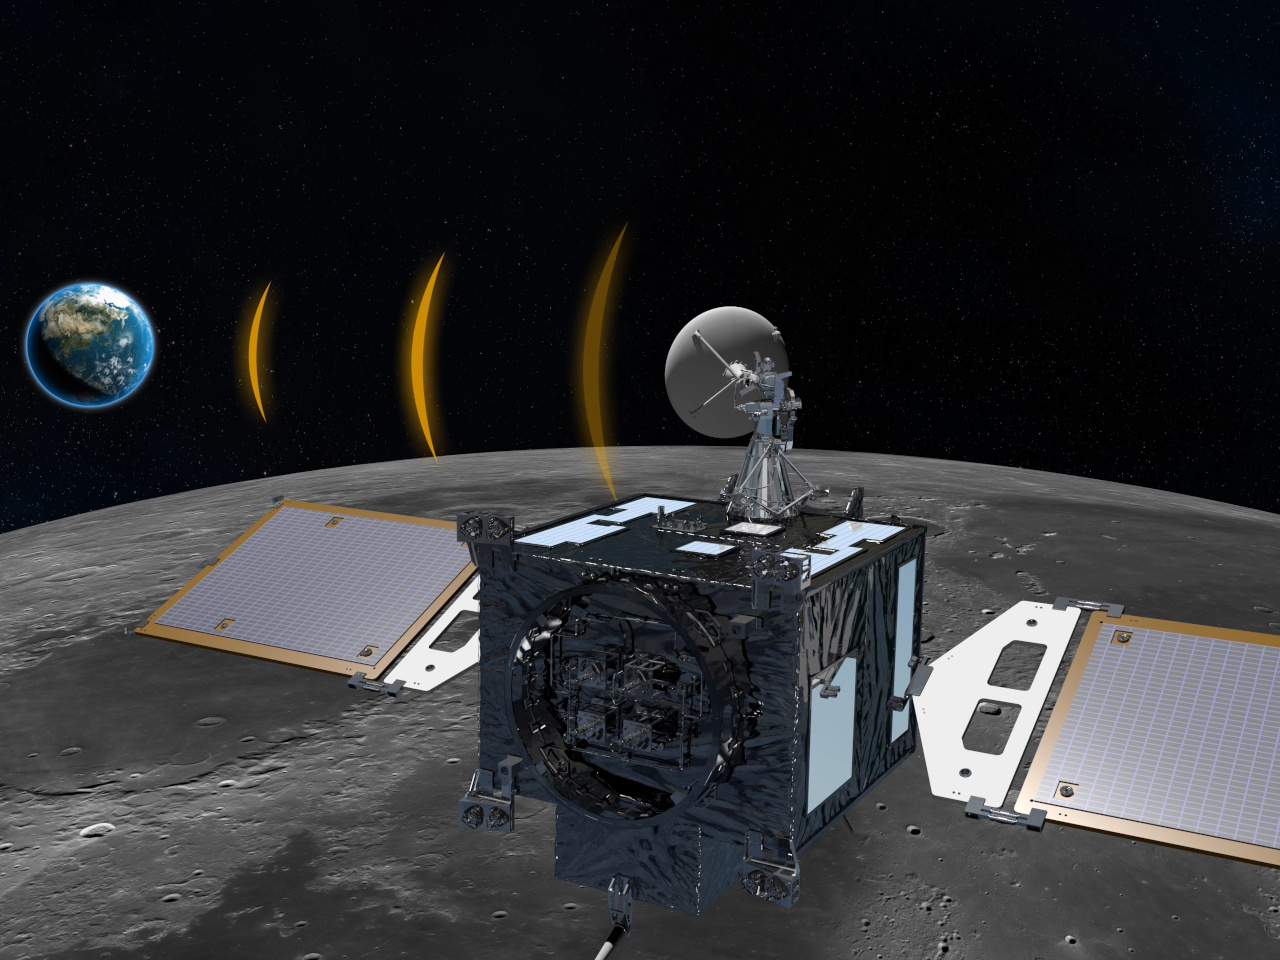 意外に月周回軌道も混雑？--韓国の月探査機、ほかの探査機との「衝突警告」を18カ月間で40件